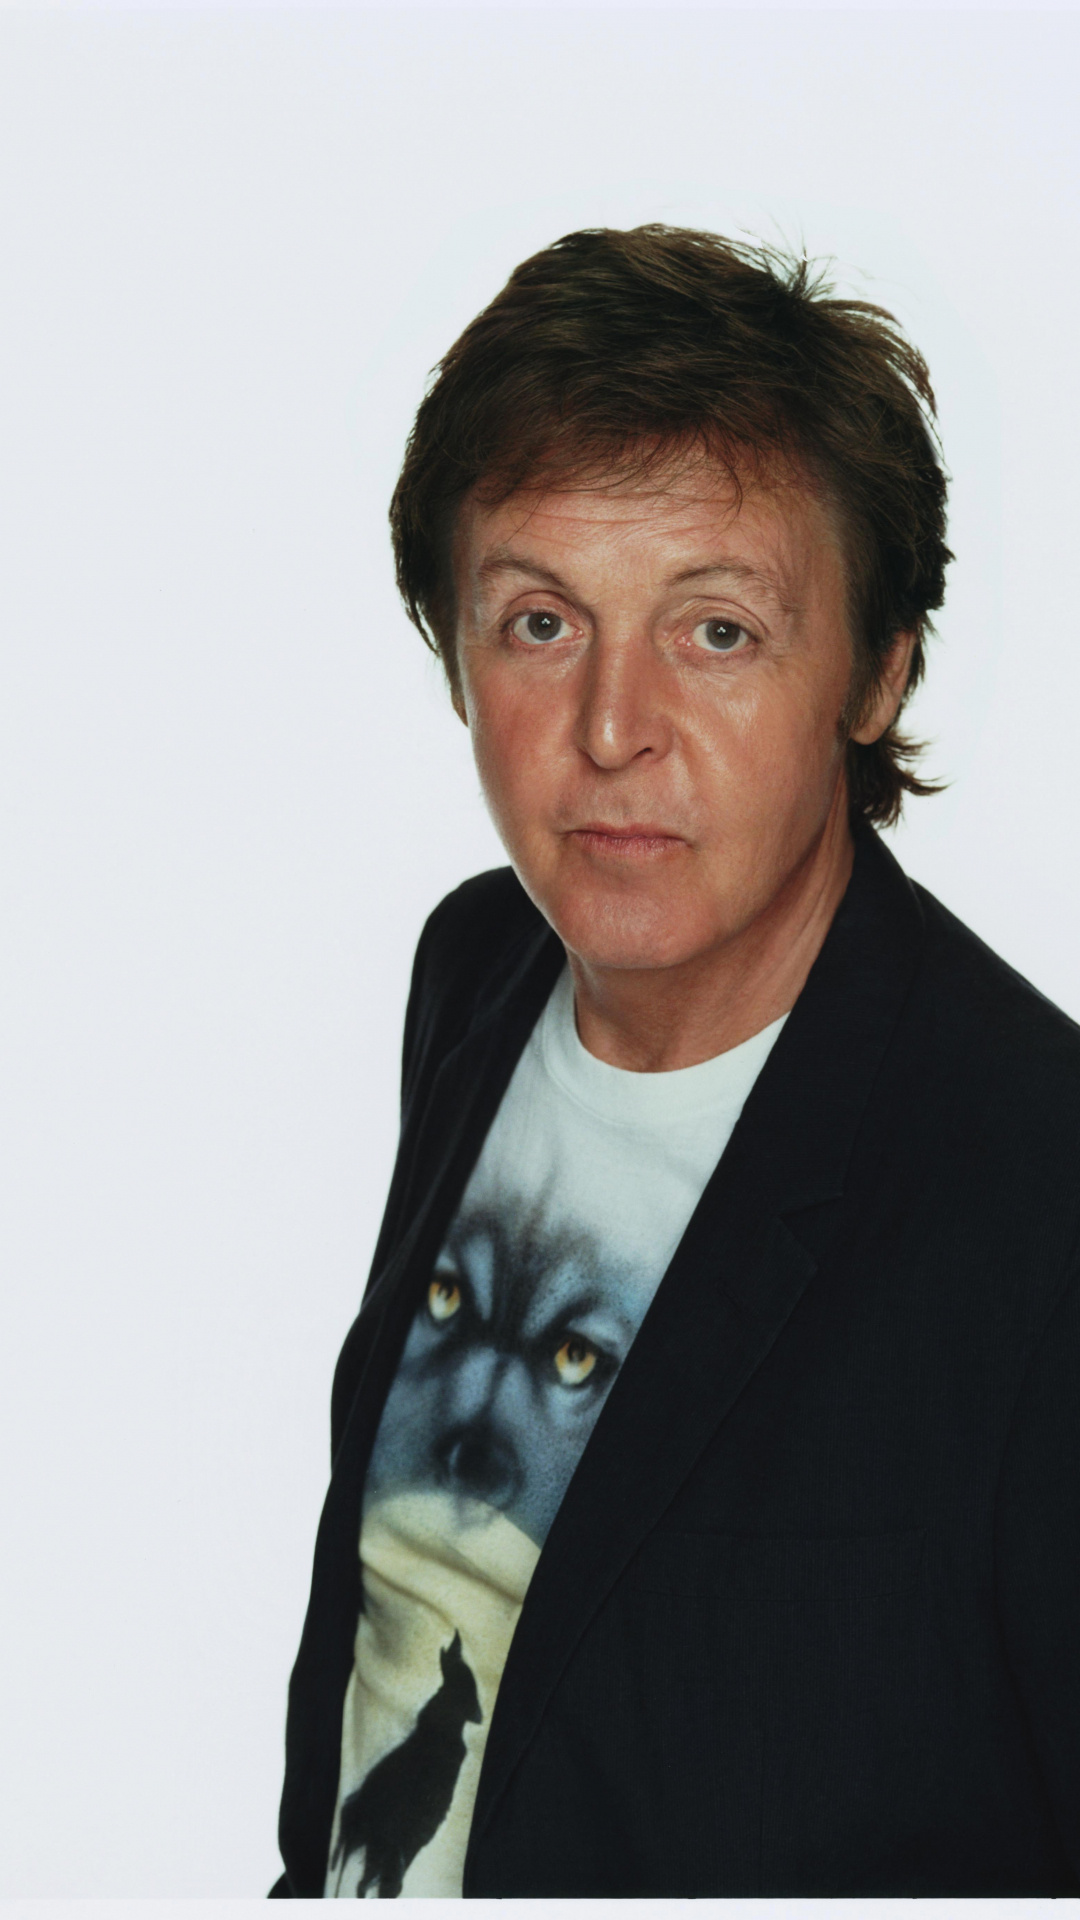 Free download, Paul McCartney images, Desktop, Mobile, 1080x1920 Full HD Phone